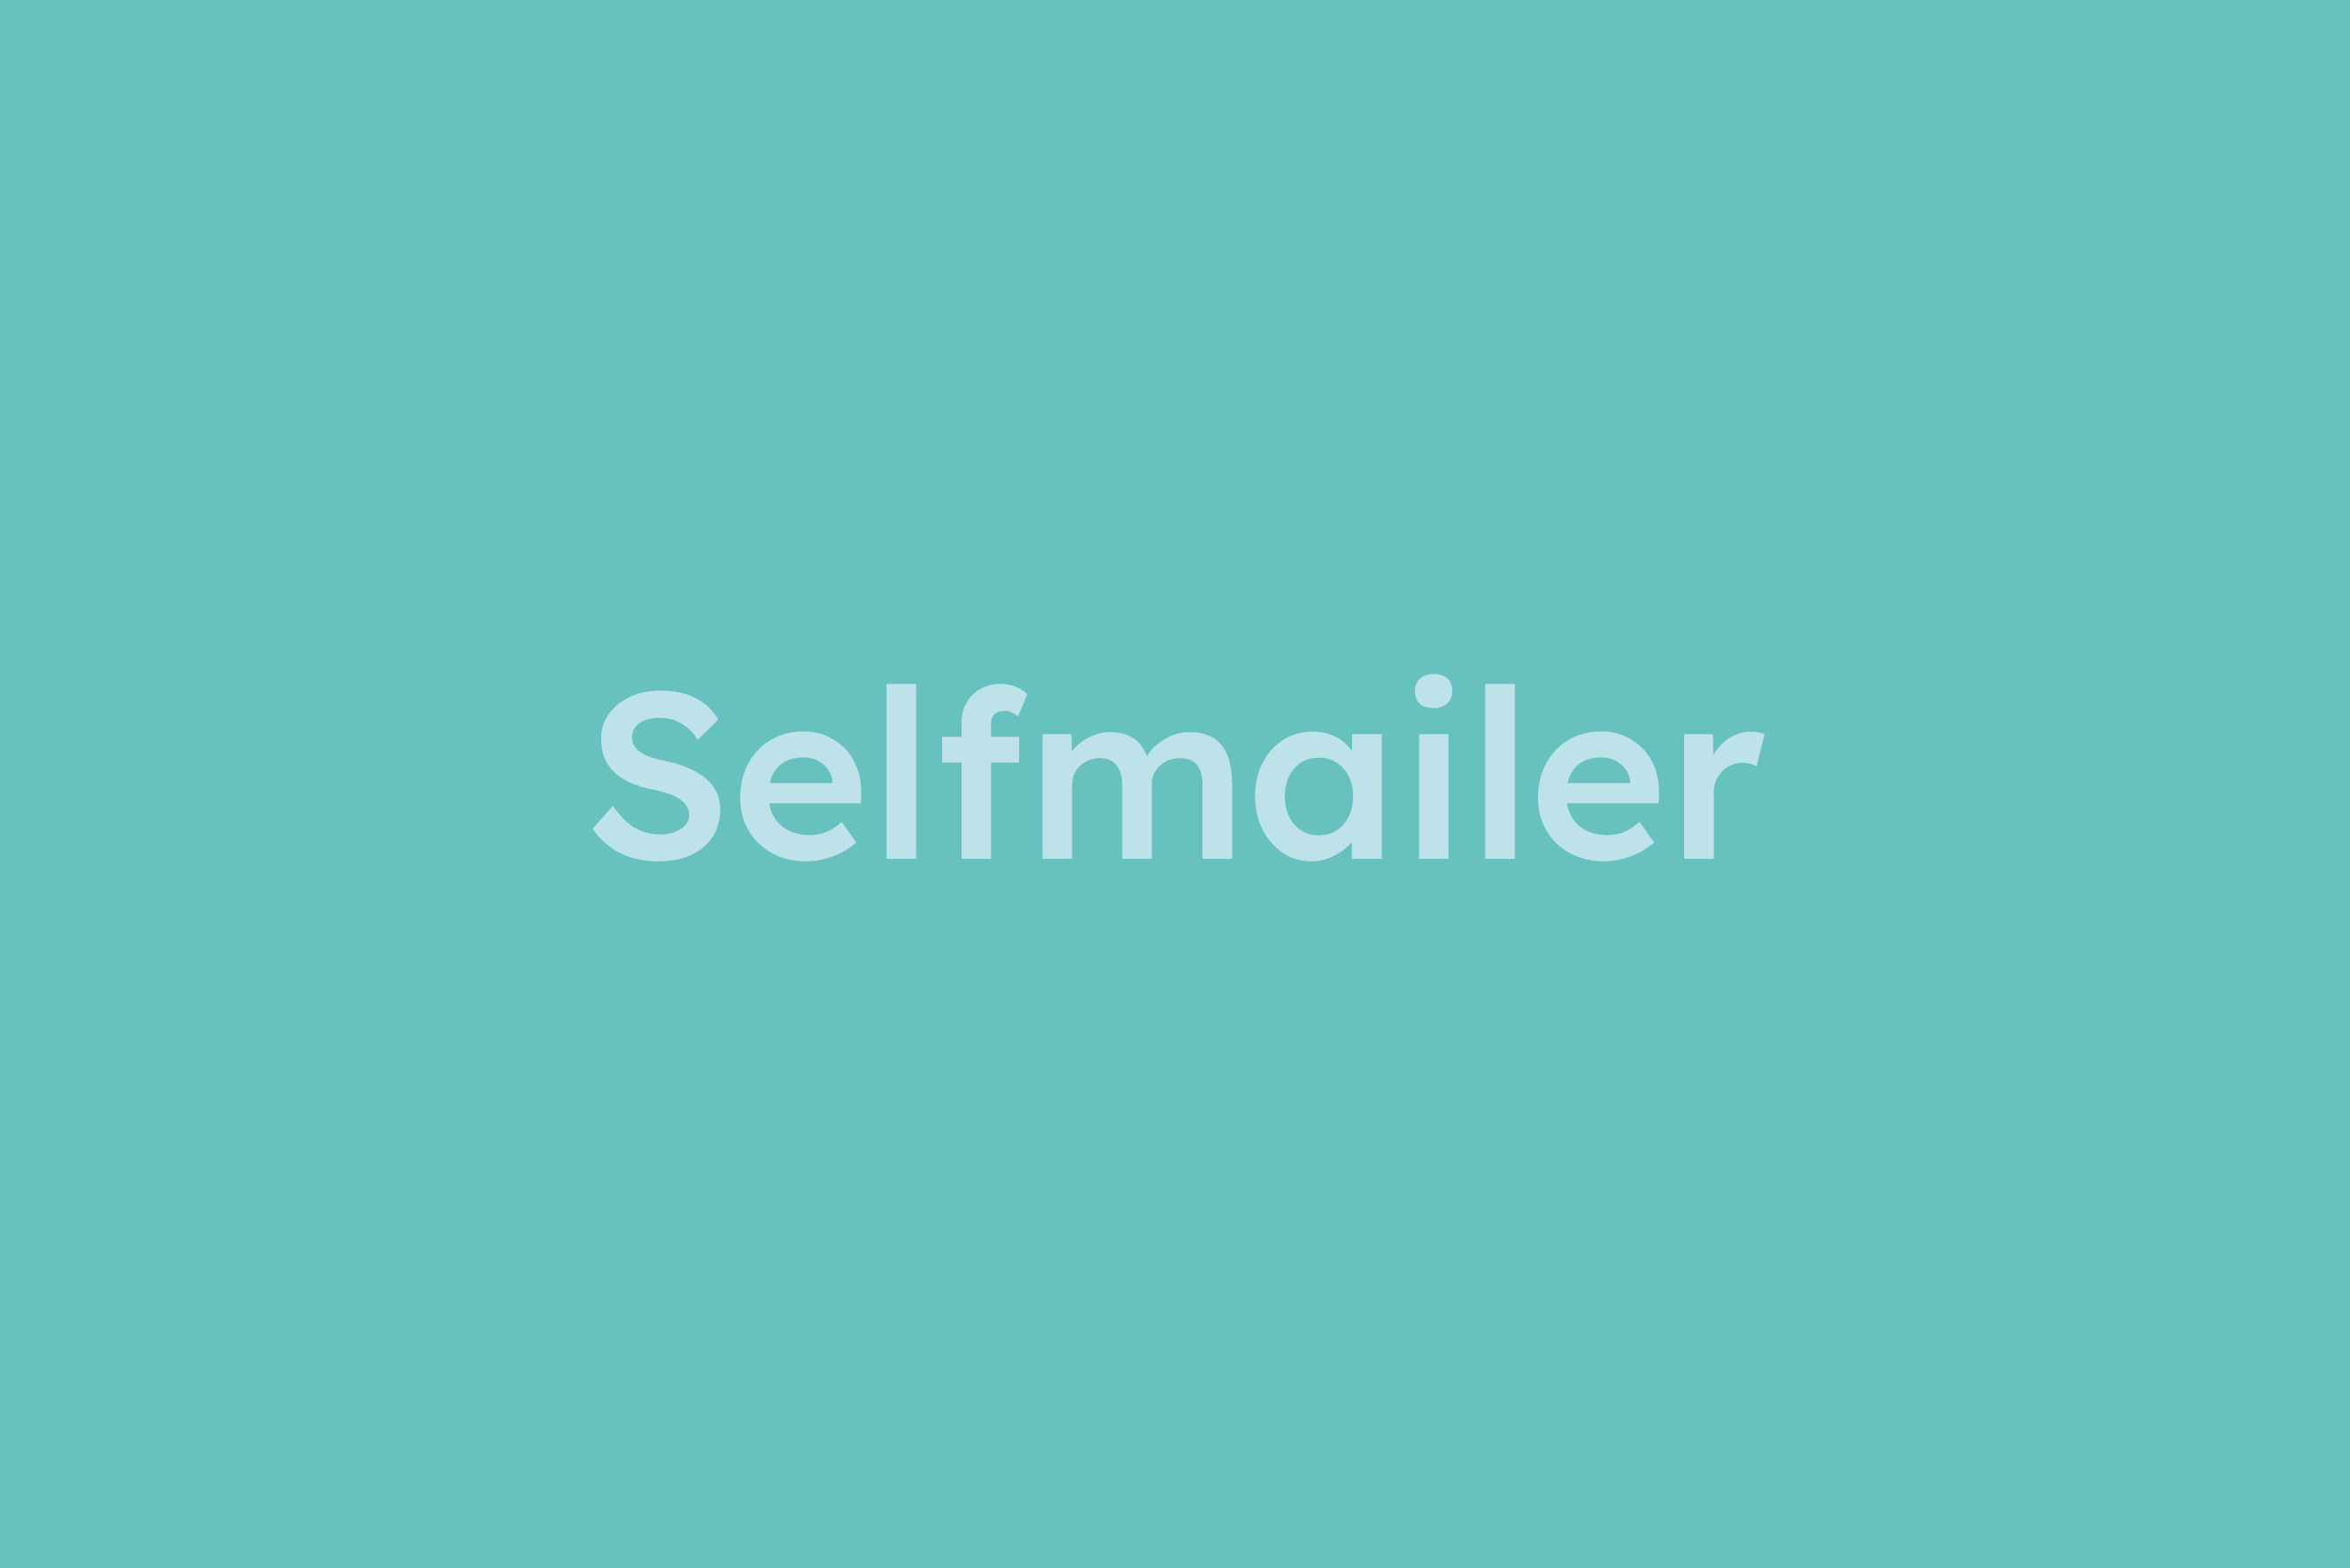 Selfmailer erklärt im Glossar von Campaign